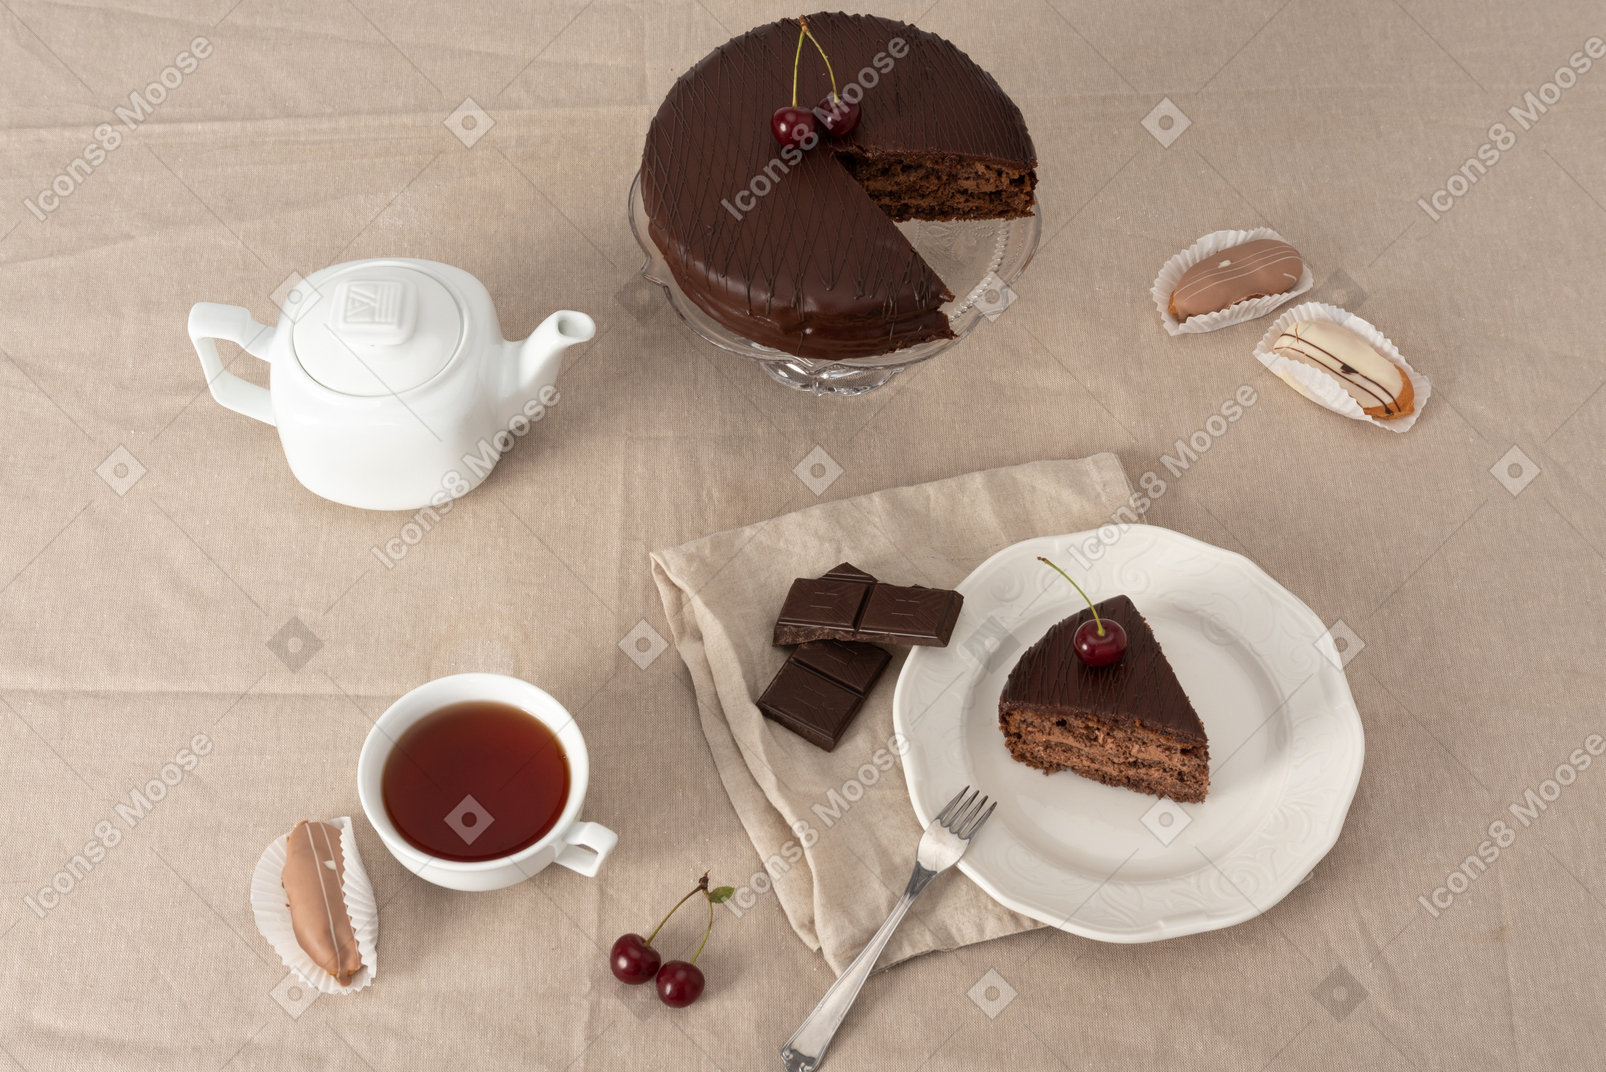 Шоколадный торт на подставке, чайник, чашка чая и кусок пирога на тарелке